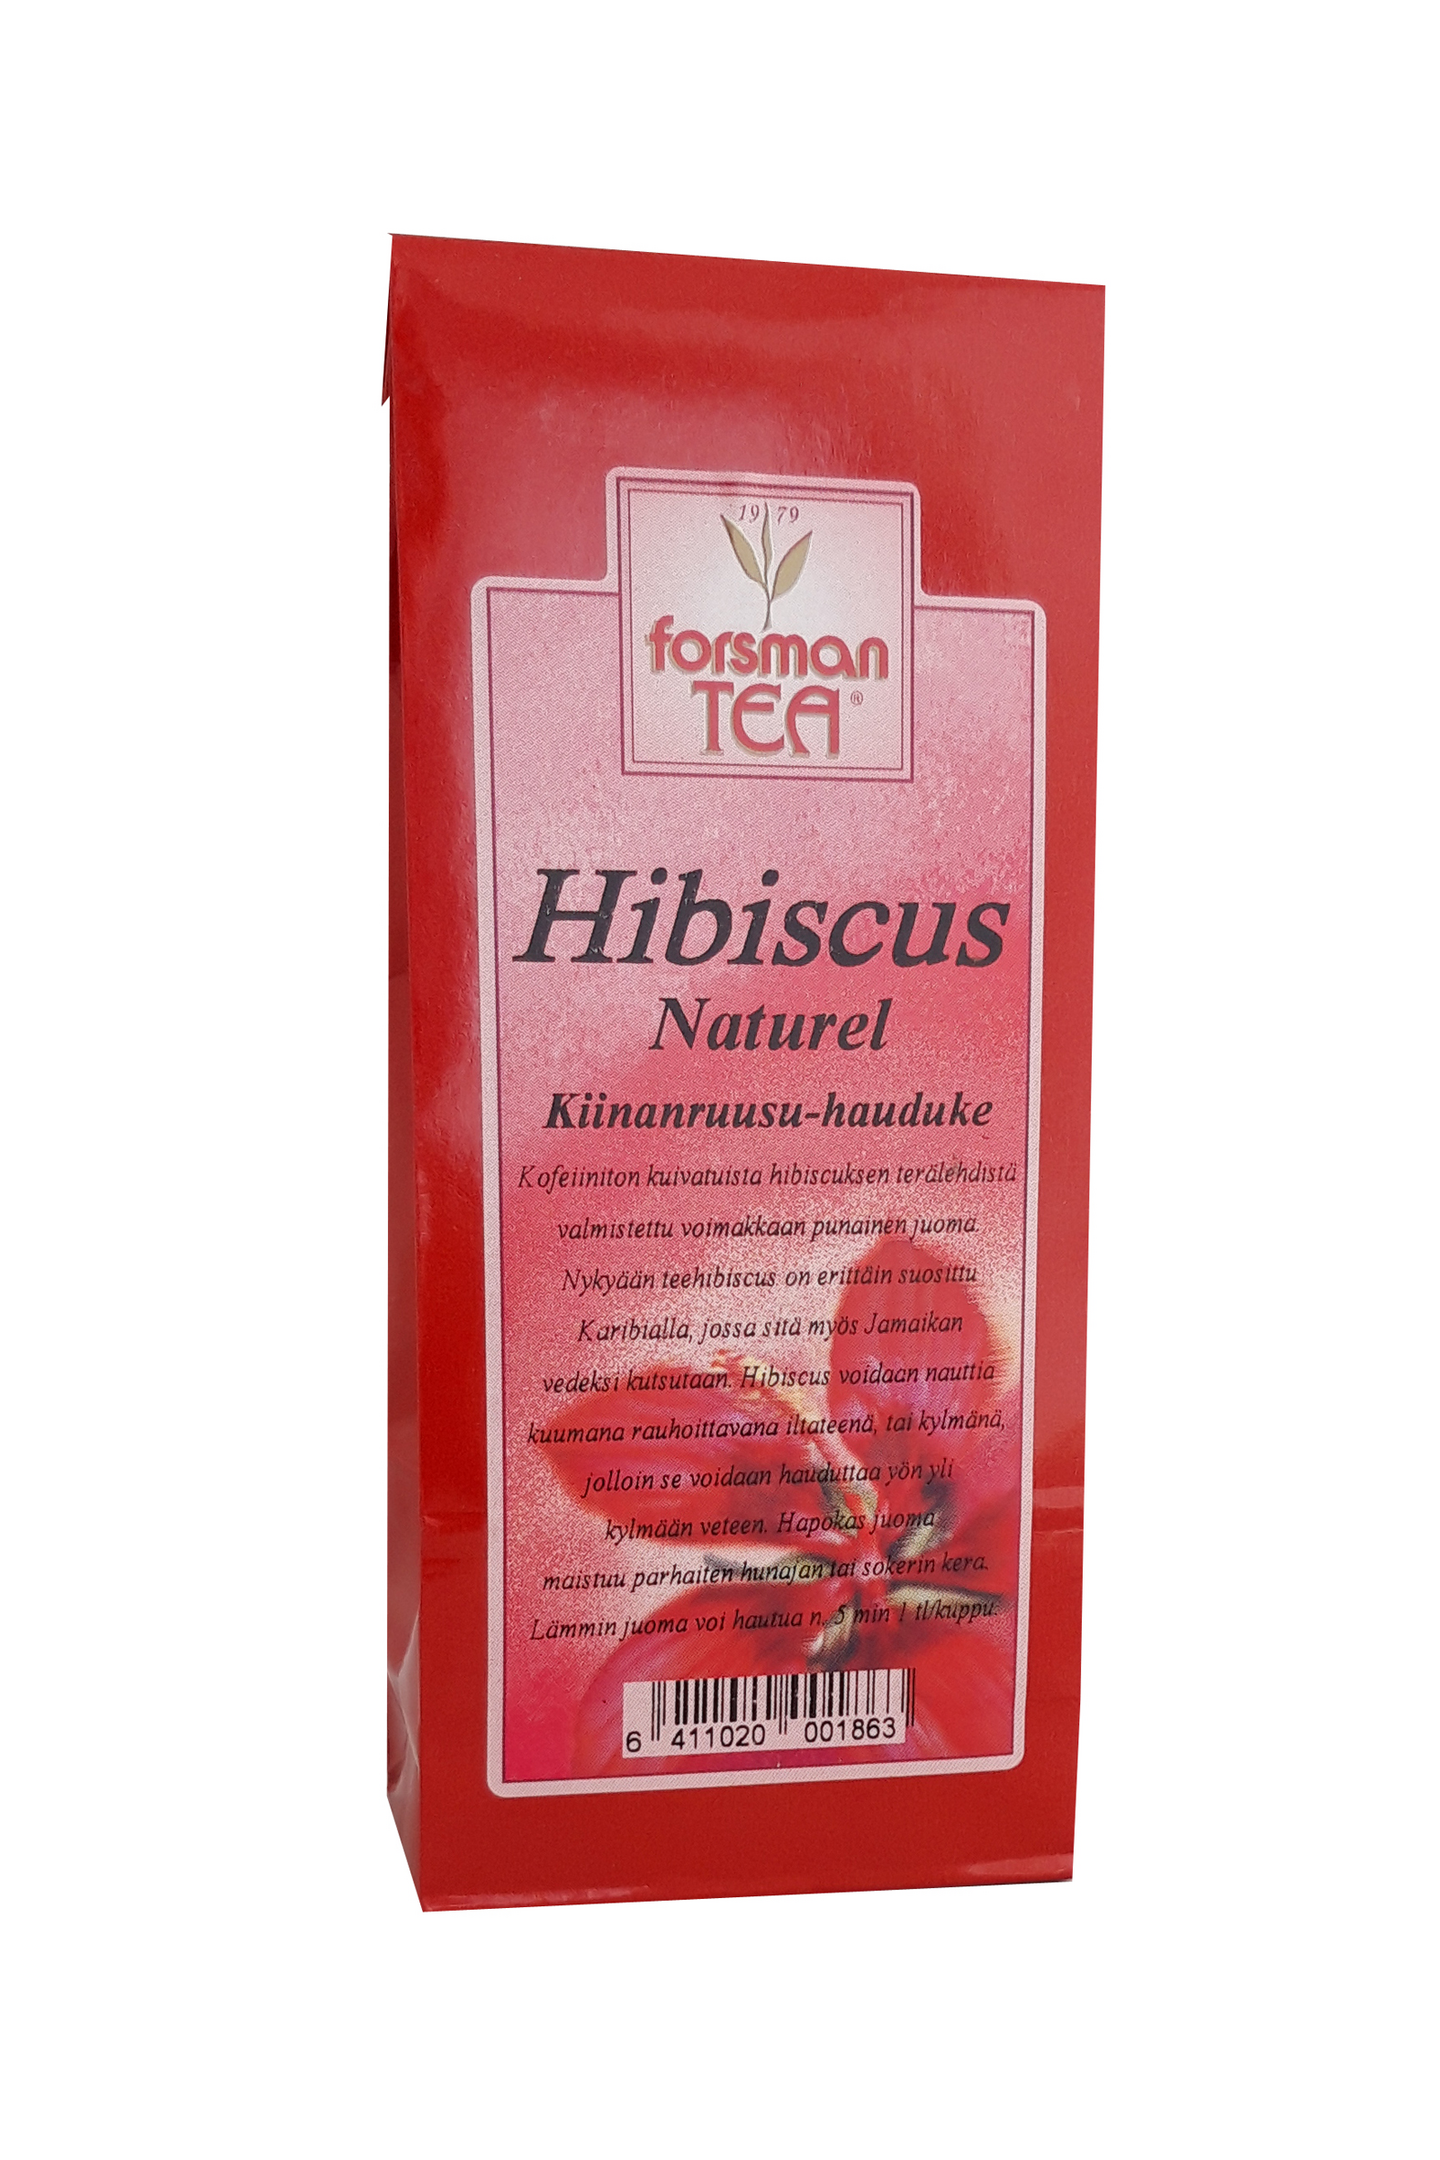 Forsman Tea Hibiscus Naturel Kiinanruusu-hauduke 60g | K-Ruoka Verkkokauppa